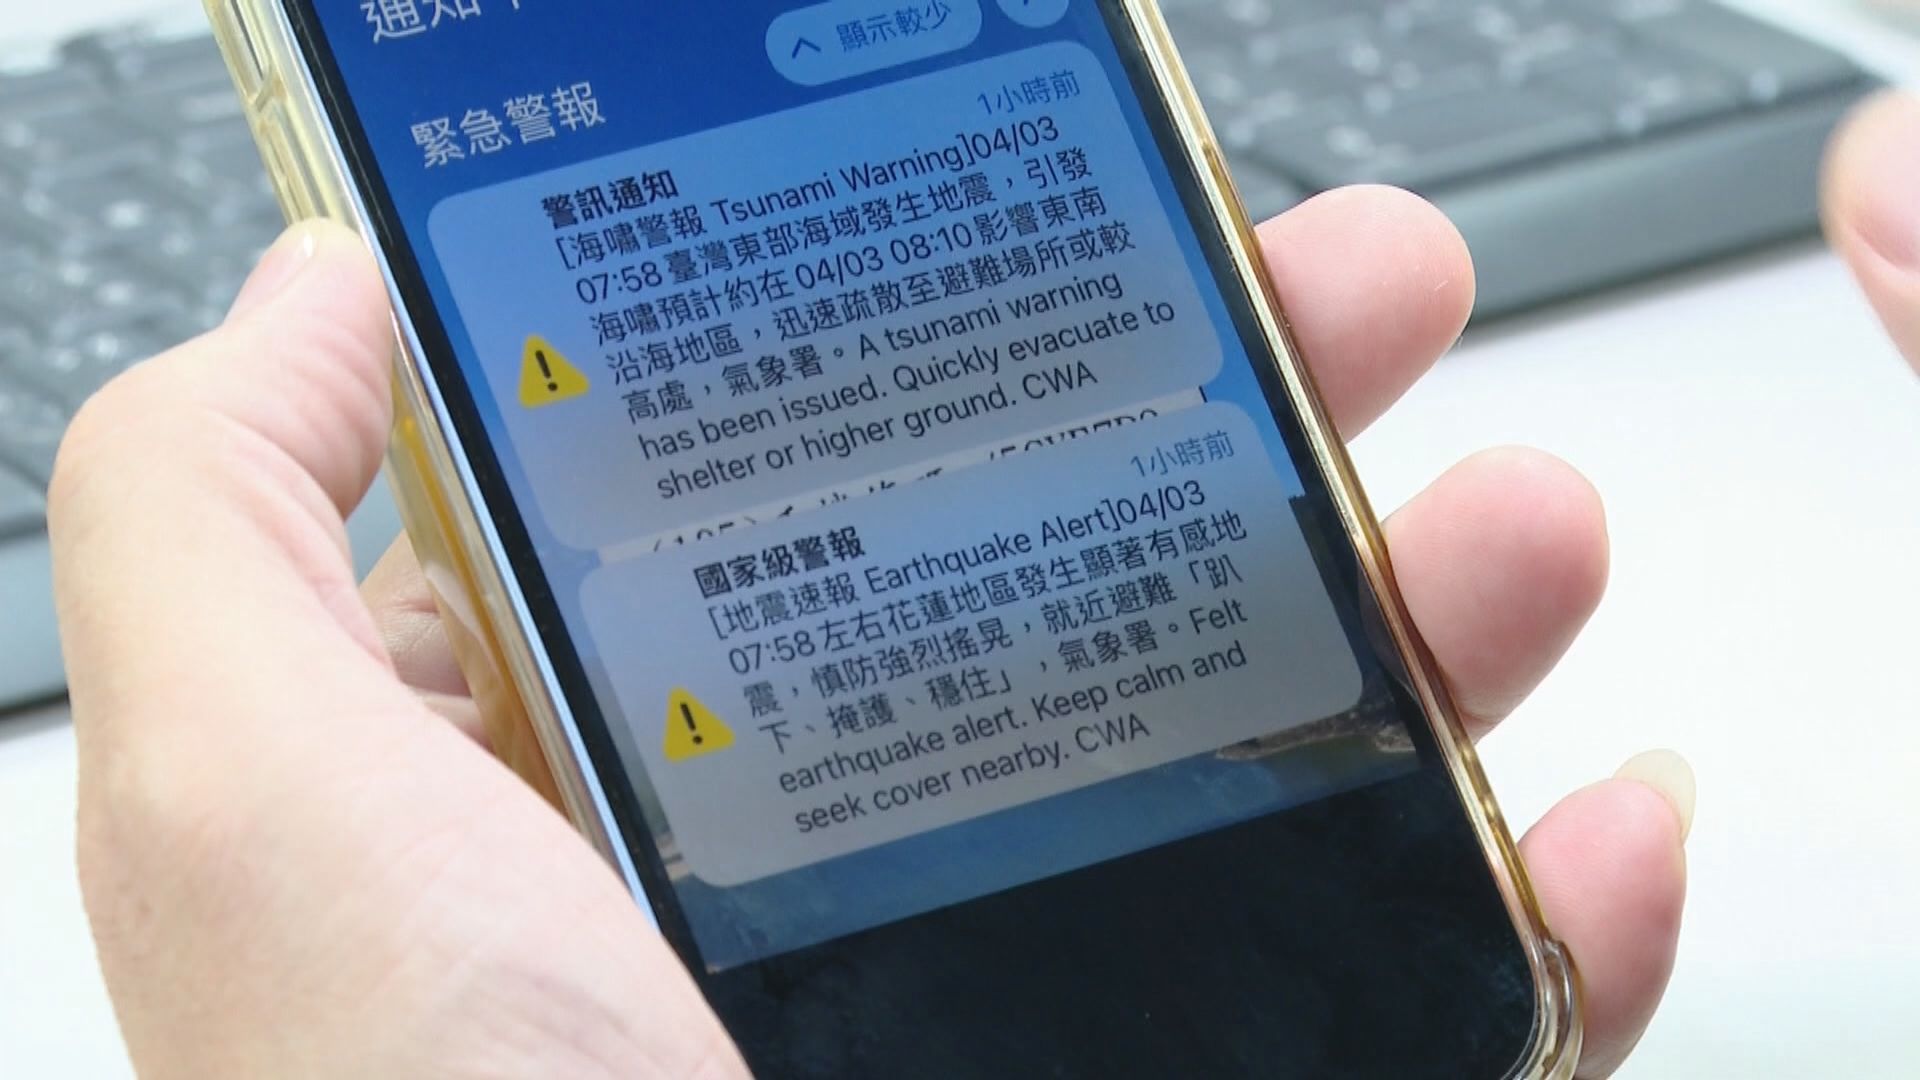 台灣部分地區民眾稱沒收到地震警報 當局承認低估地震規模